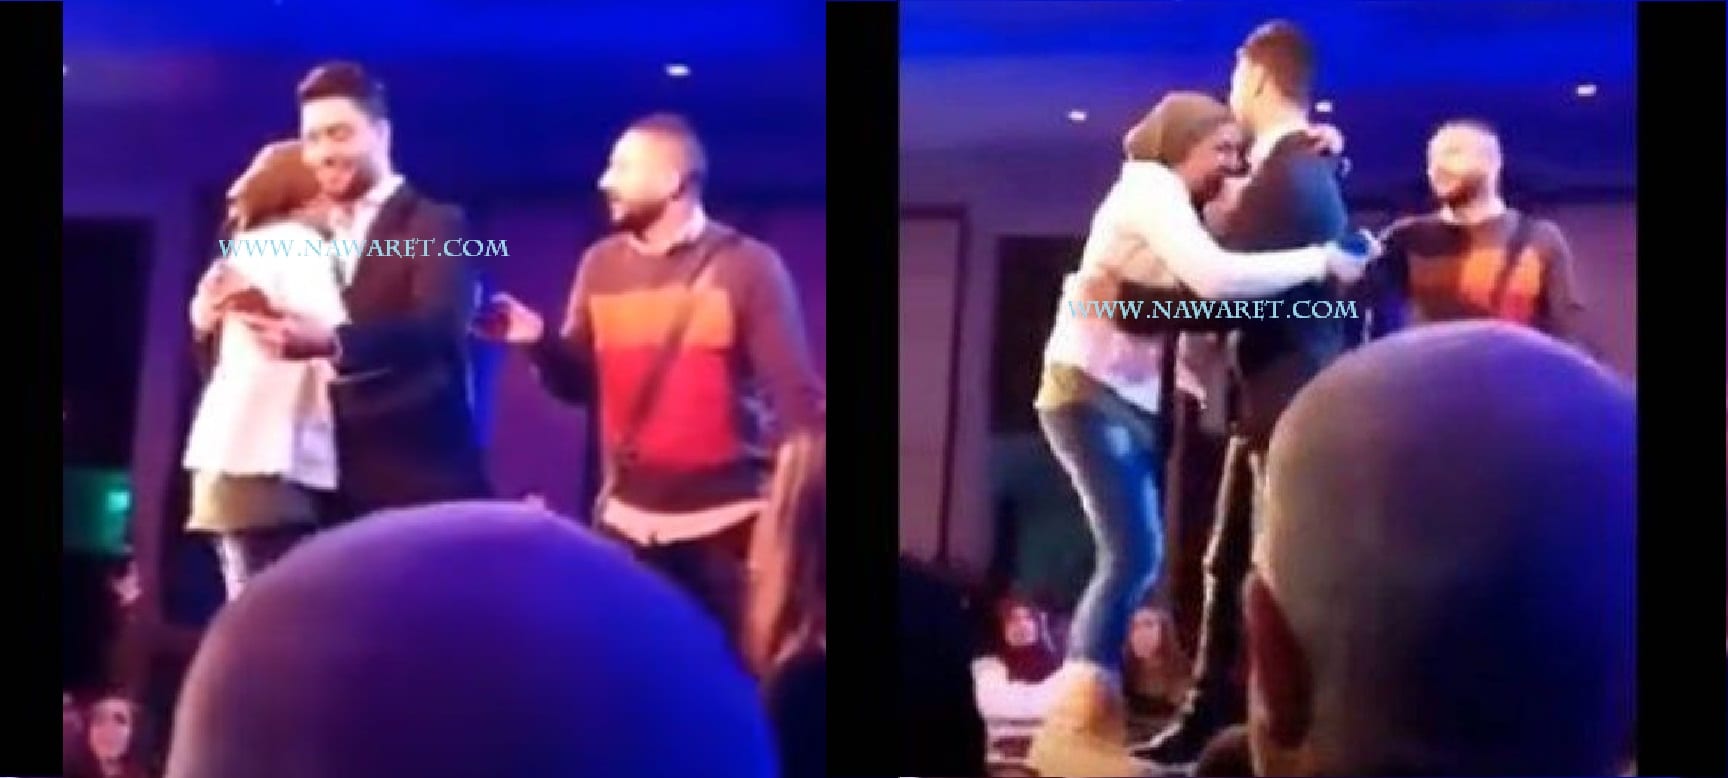 بالفيديو– معجبة محجبة تحرج نجم"أراب آيدول" وتخترق الأمن لتقبله وتحضنه على المسرح